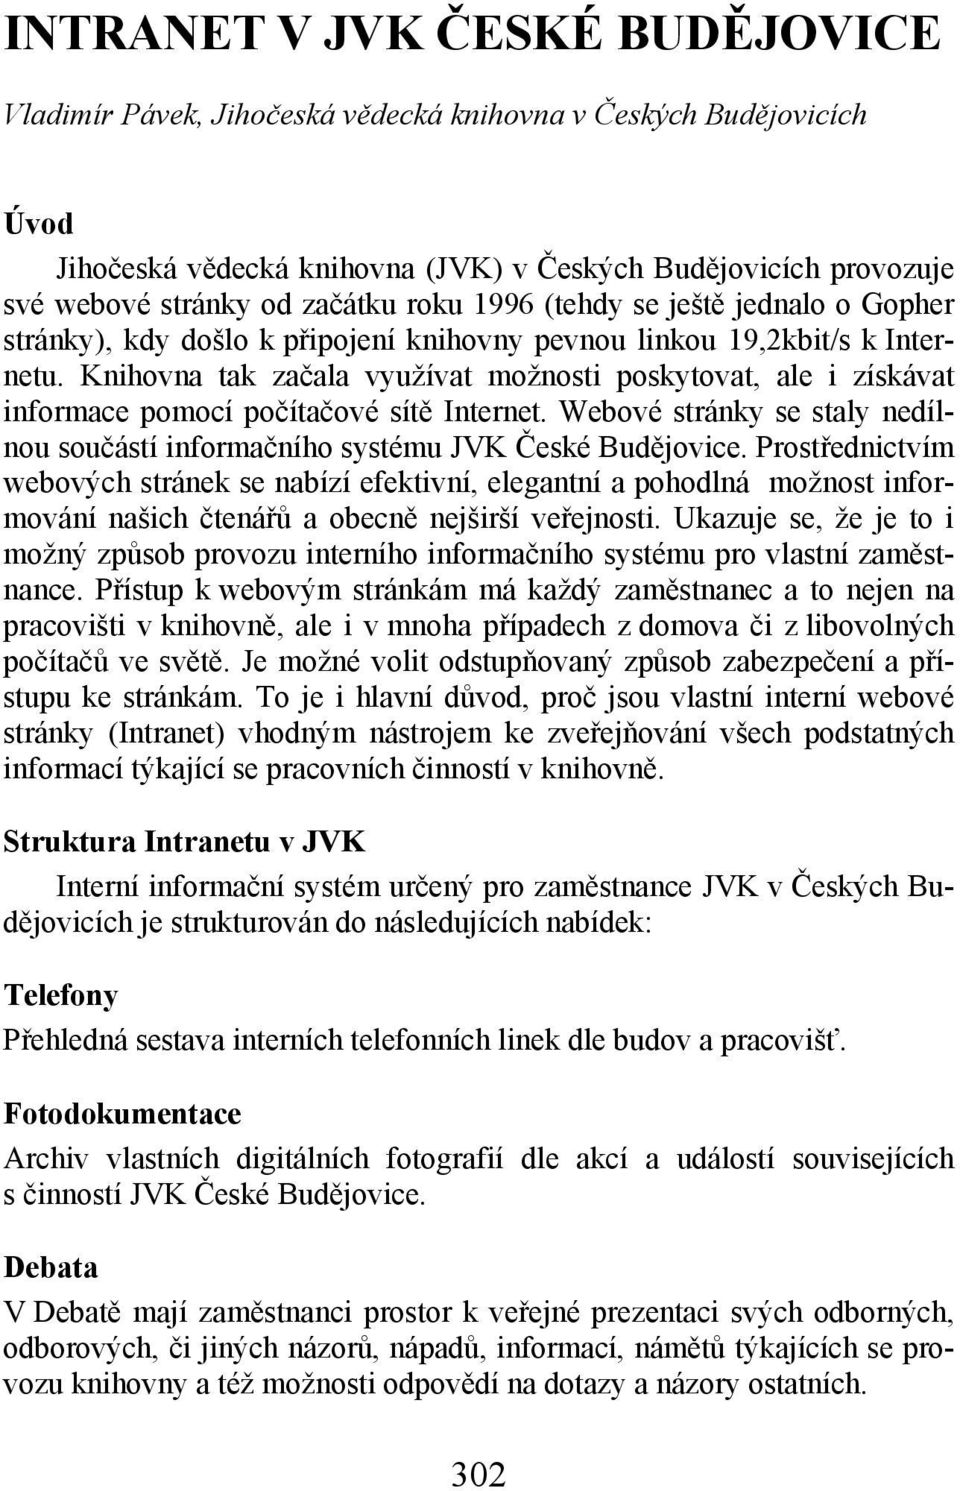 Webvé stránky se staly nedílnu sučástí infrmačníh systému JVK České Budějvice.